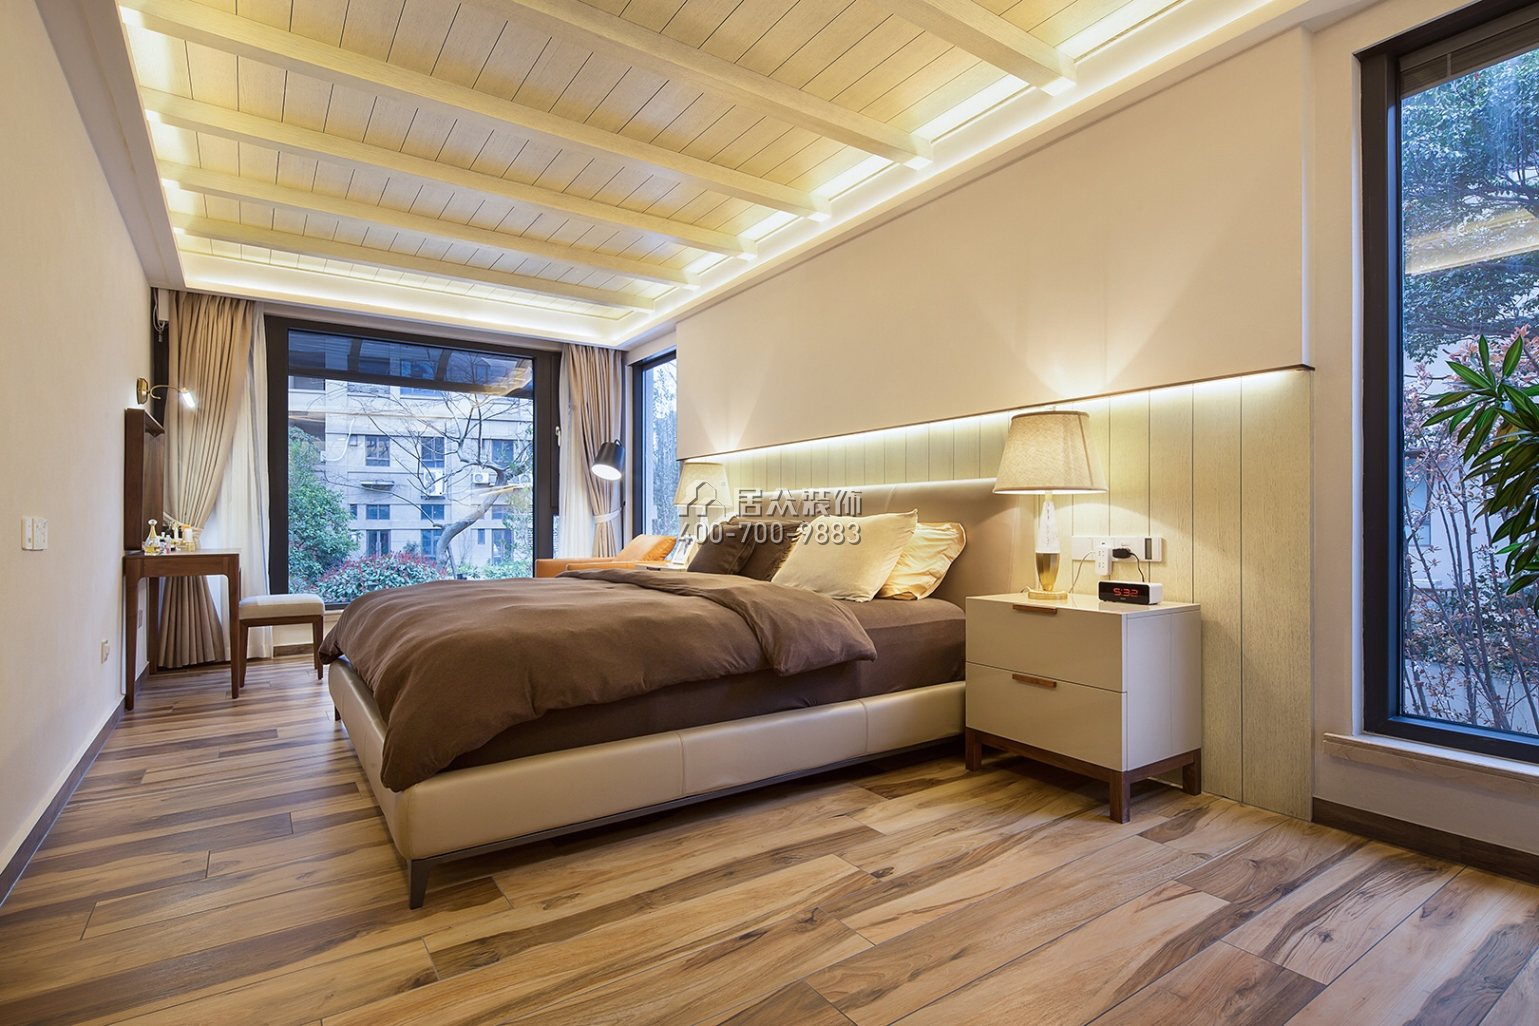 合能洋湖公馆300平方米现代简约风格复式户型卧室装修效果图